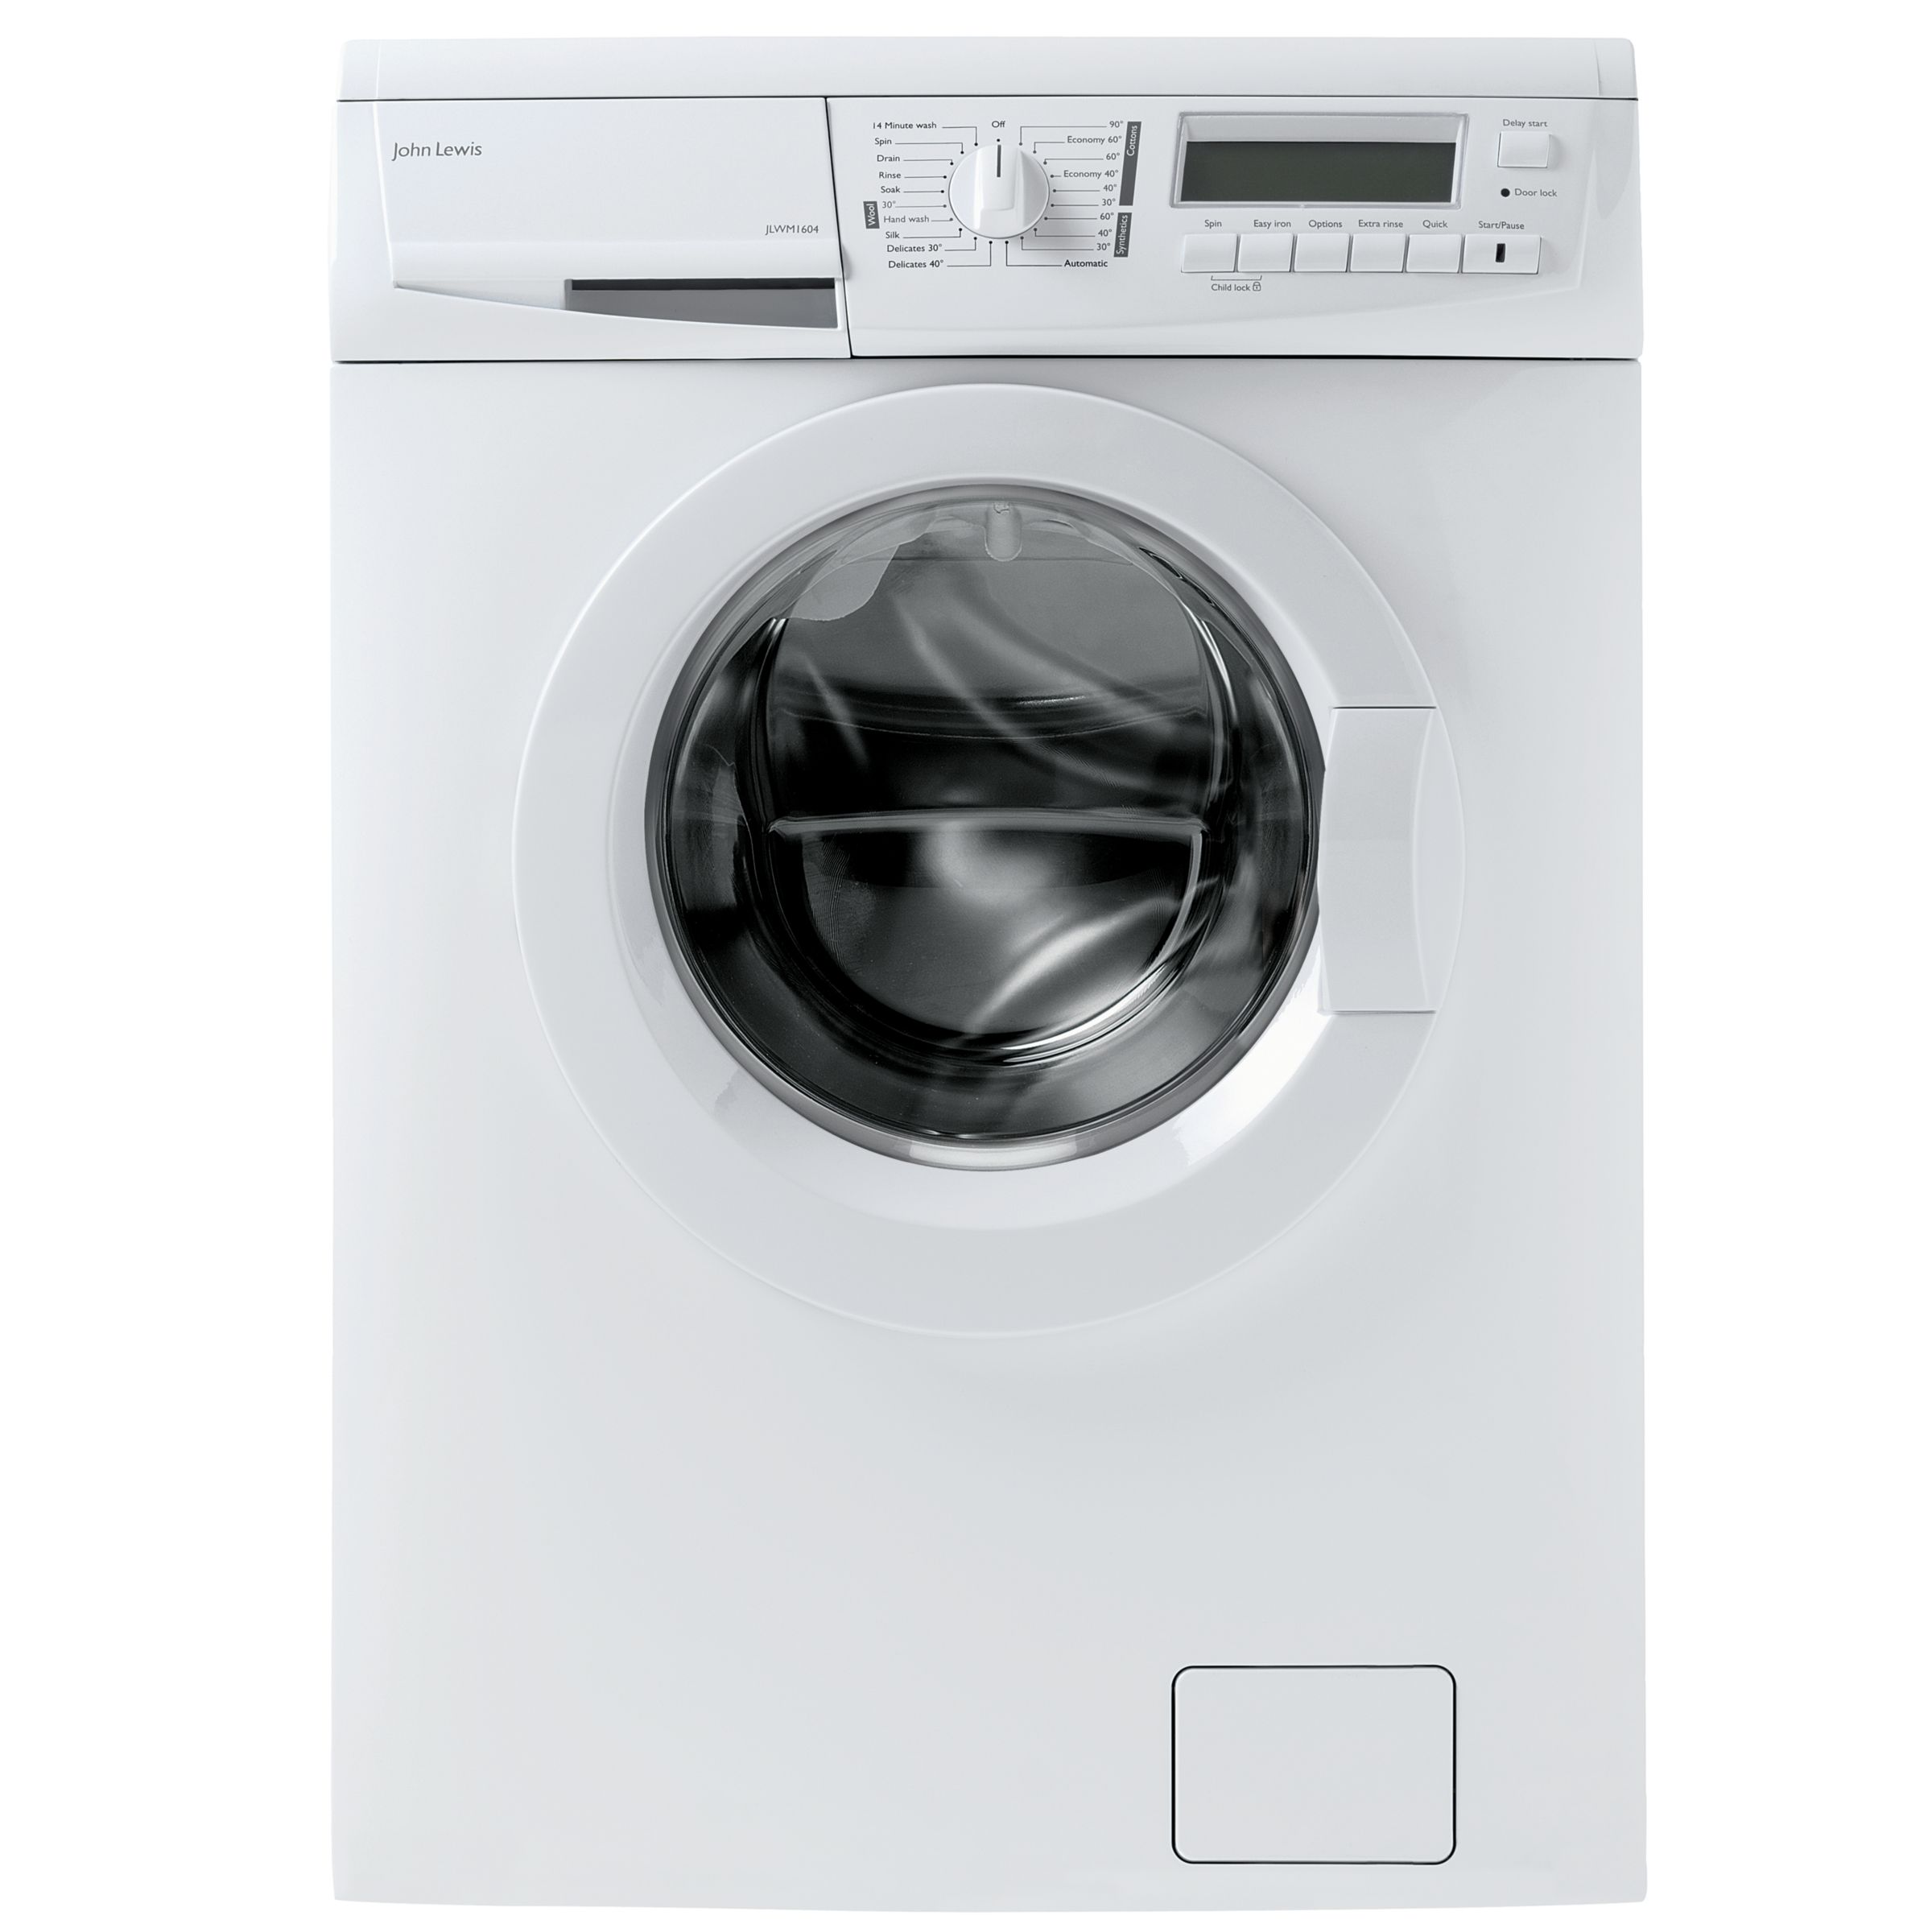 John Lewis JLWM1604 Washing Machine, White at John Lewis